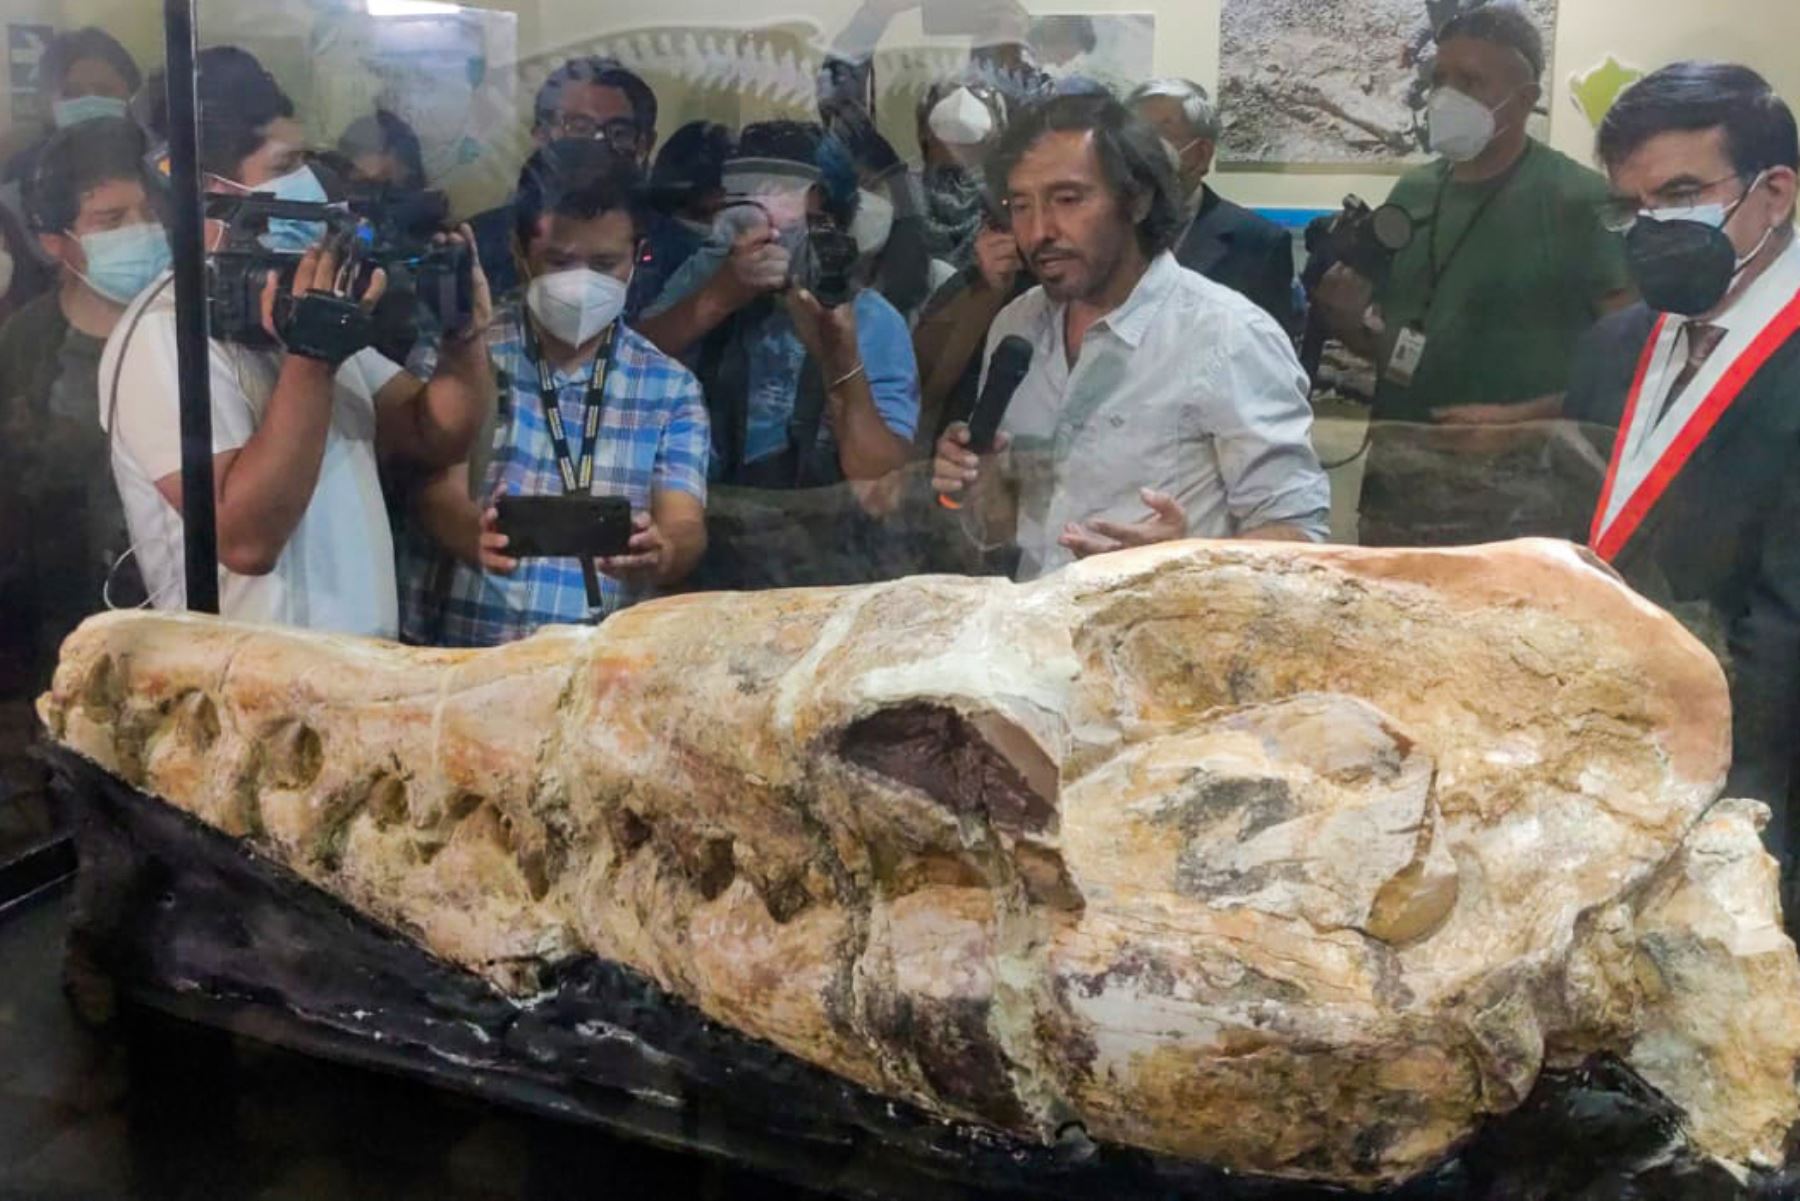 Los restos de un basilosaurio que habitó los mares del Perú hace 36 millones de años fueron presentados por paleontólogos del Museo de Historia Natural de la Universidad Nacional Mayor de San Marcos (UNMSM). Foto: ANDINA/ Héctor Vinces